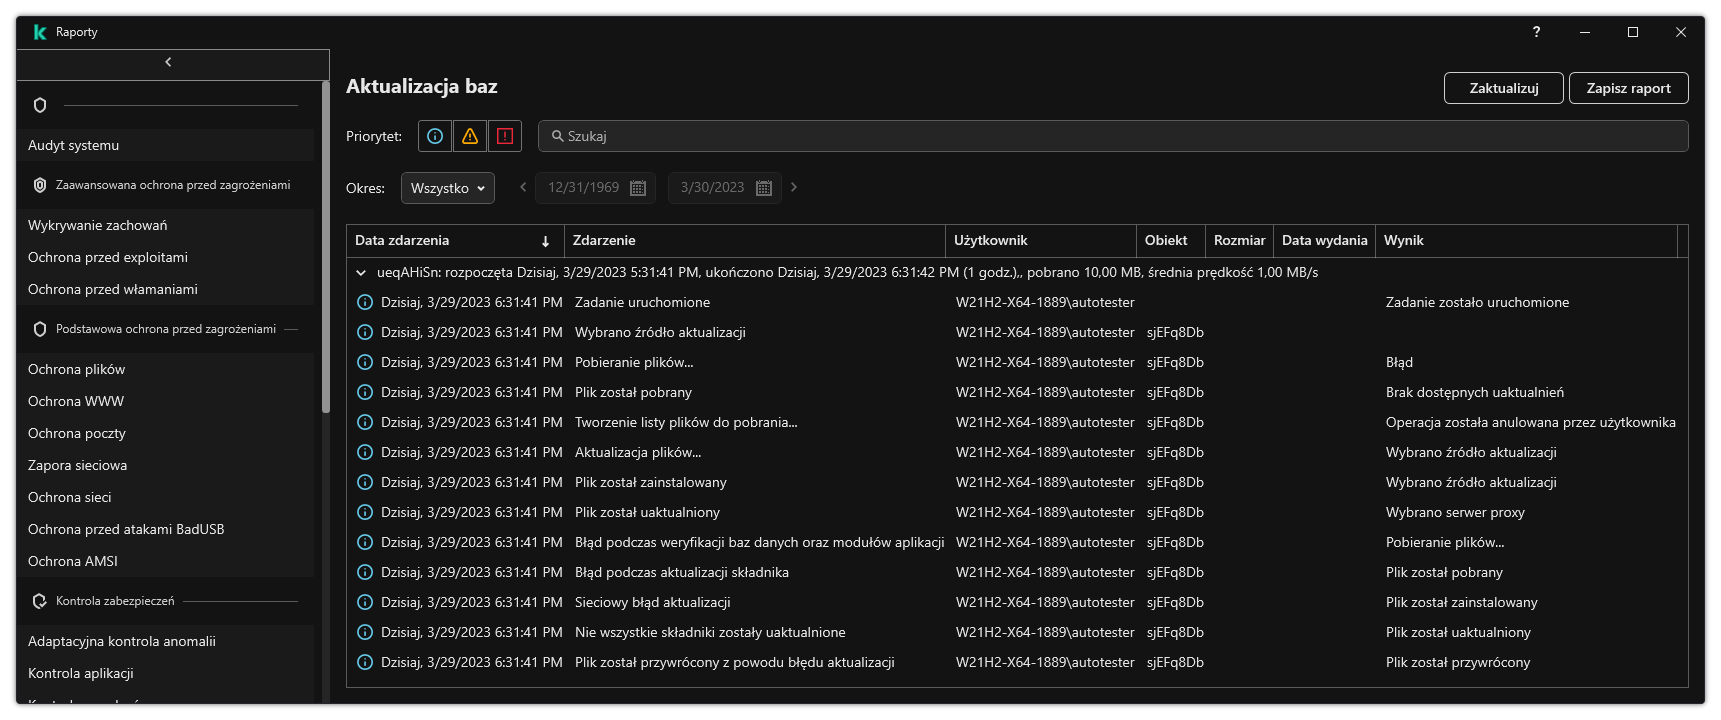 Okno z listą zdarzeń w raporcie. Użytkownik ma możliwość filtrowania/sortowania zdarzeń oraz zapisywania raportów do pliku.